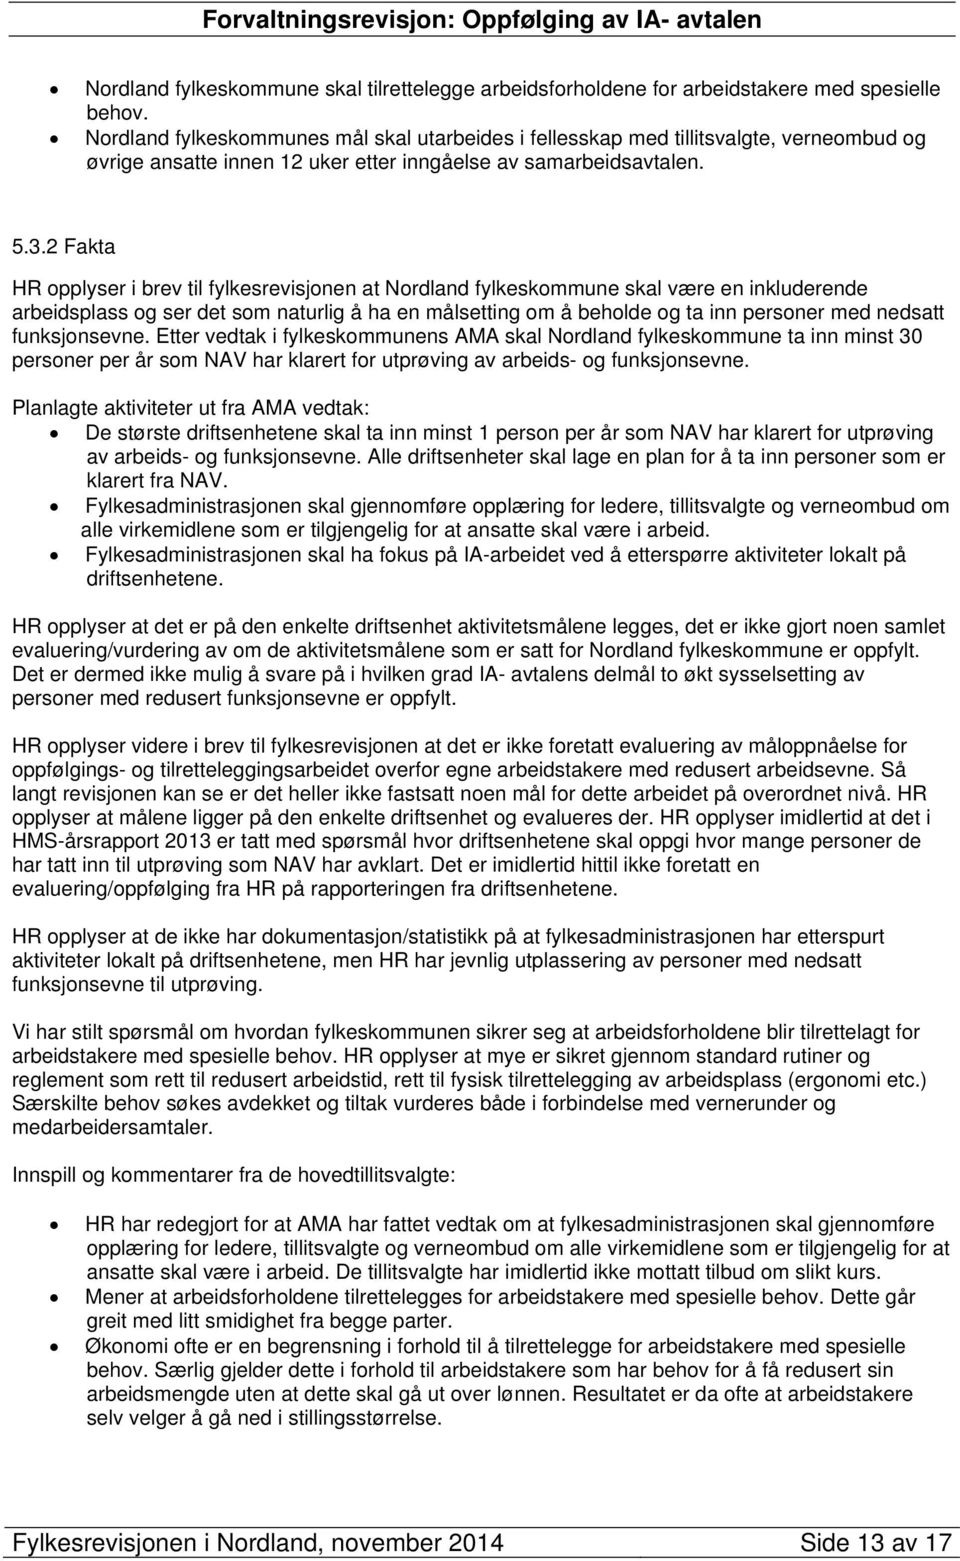 2 Fakta HR opplyser i brev til fylkesrevisjonen at Nordland fylkeskommune skal være en inkluderende arbeidsplass og ser det som naturlig å ha en målsetting om å beholde og ta inn personer med nedsatt